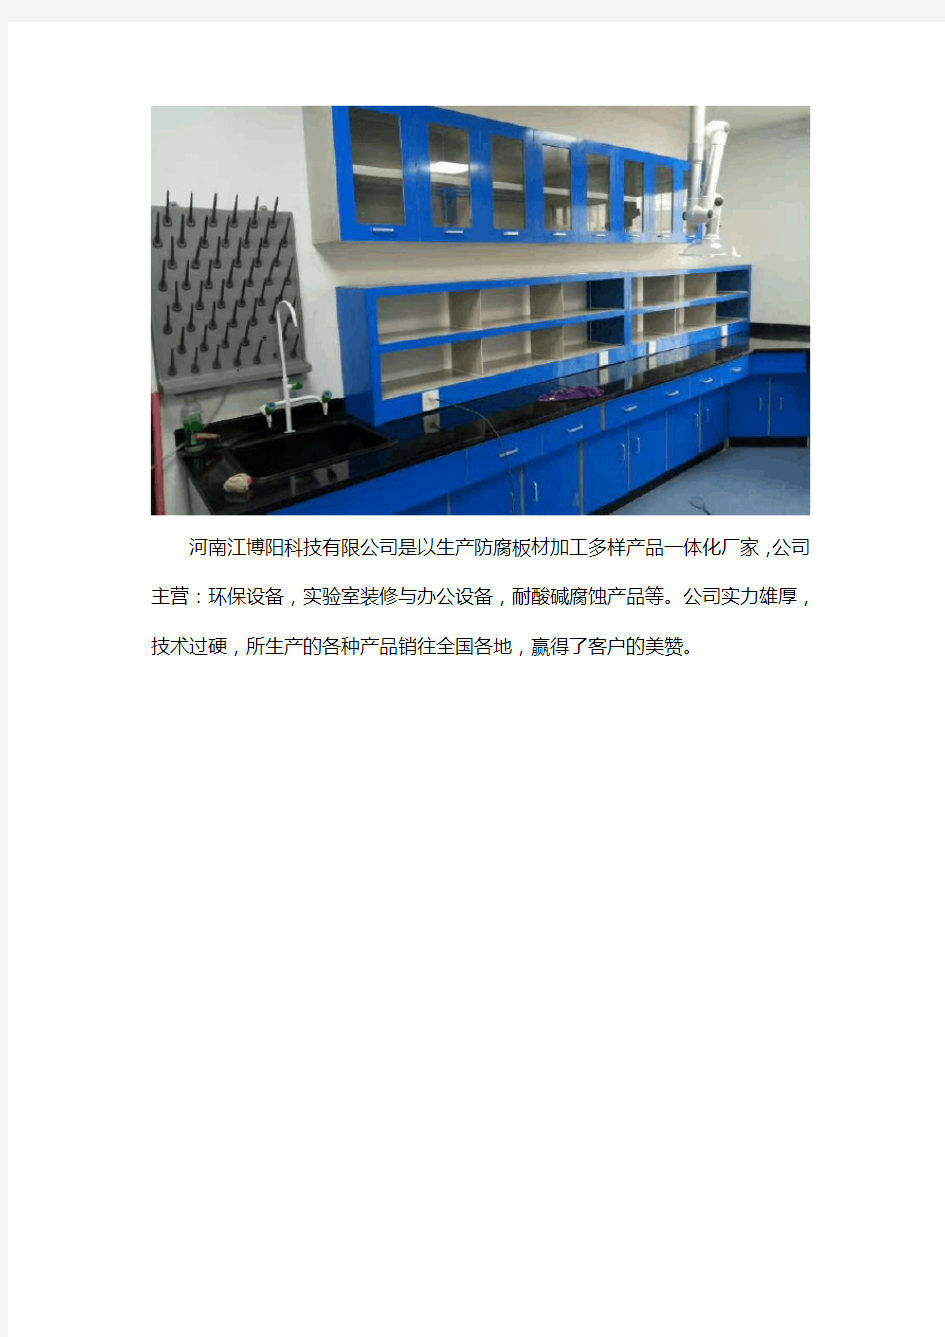 河南实验室中央实验台生产厂家常见的材质